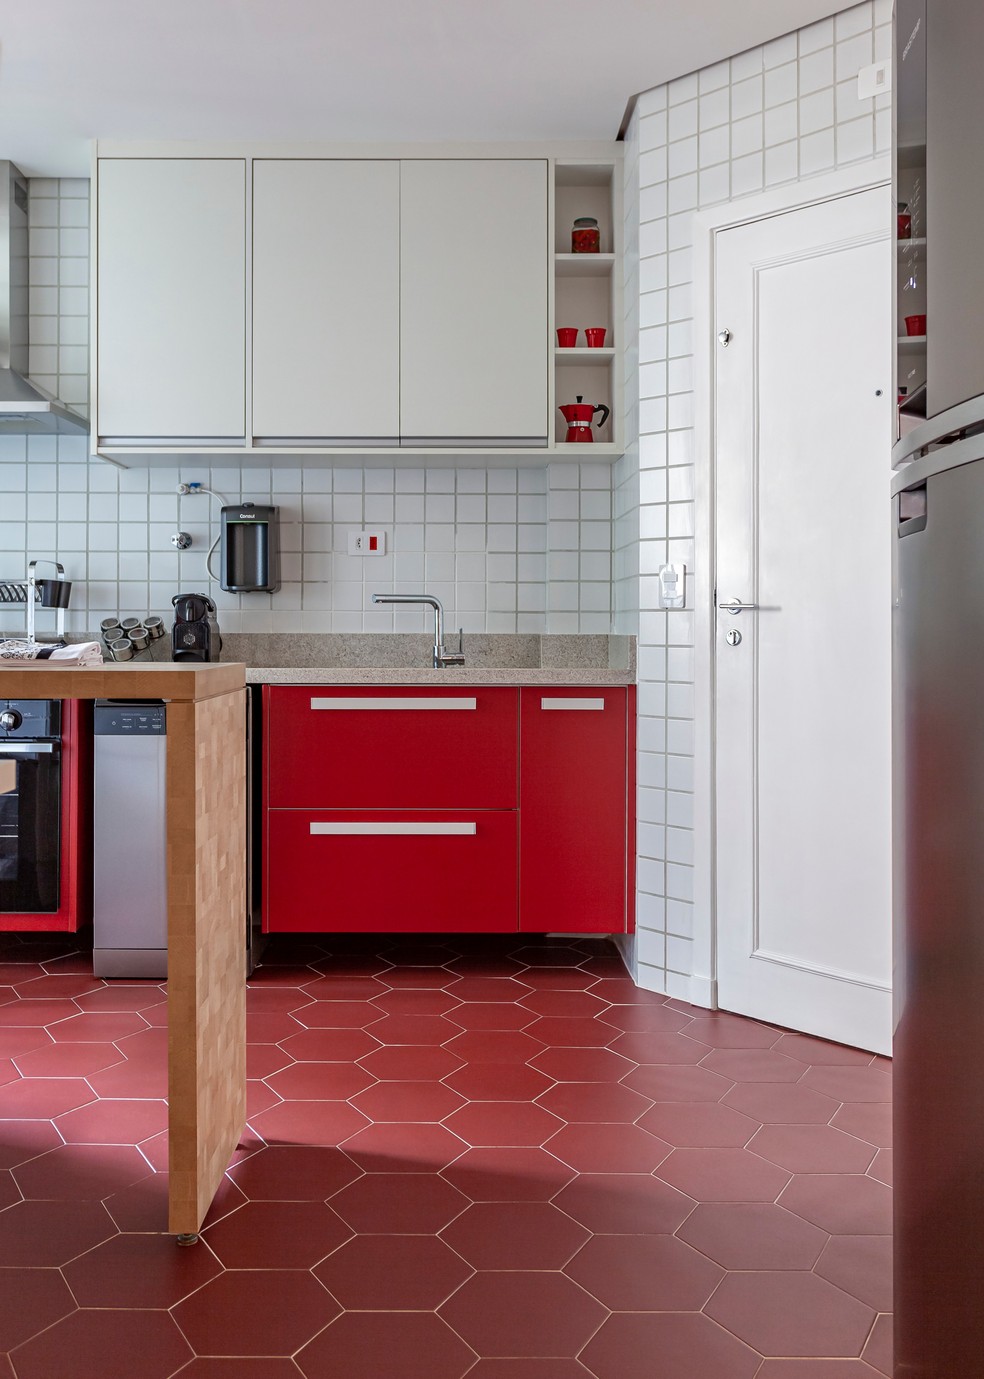 Cozinha projetada pela arquiteta Christiane Schiavoni mescla a intensidade do vermelho com a neutralidade do branco que reveste as paredes e a marcenaria — Foto: Carlos Piratininga